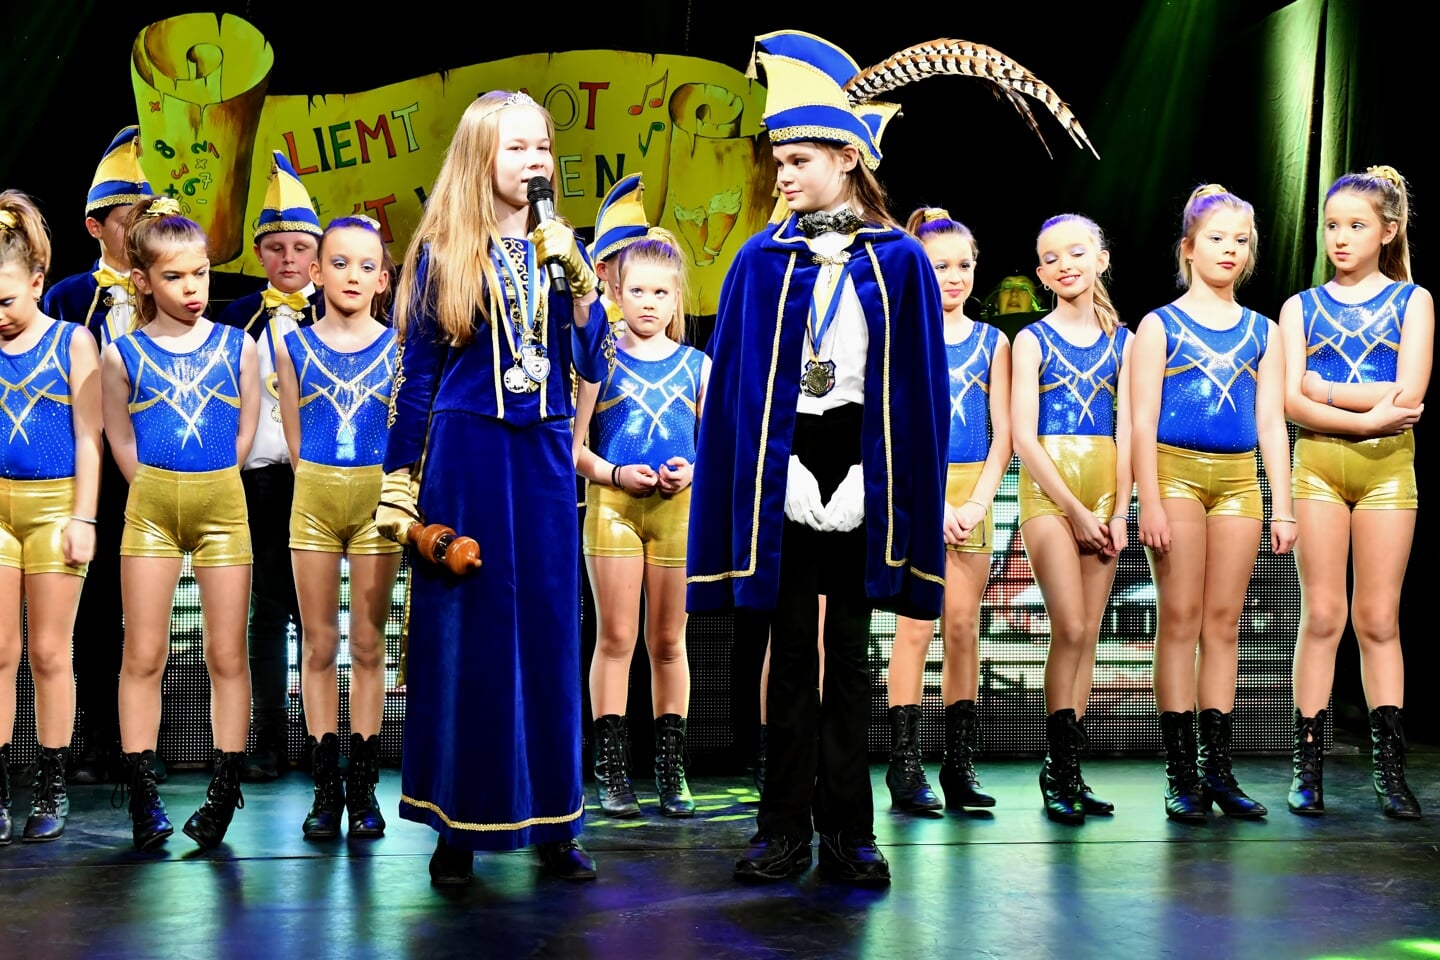 De jeugd van Ploegersland liet twee avonden achter elkaar van zich horen op het podium van De Serenade. Ze krijgen een staande ovatie.